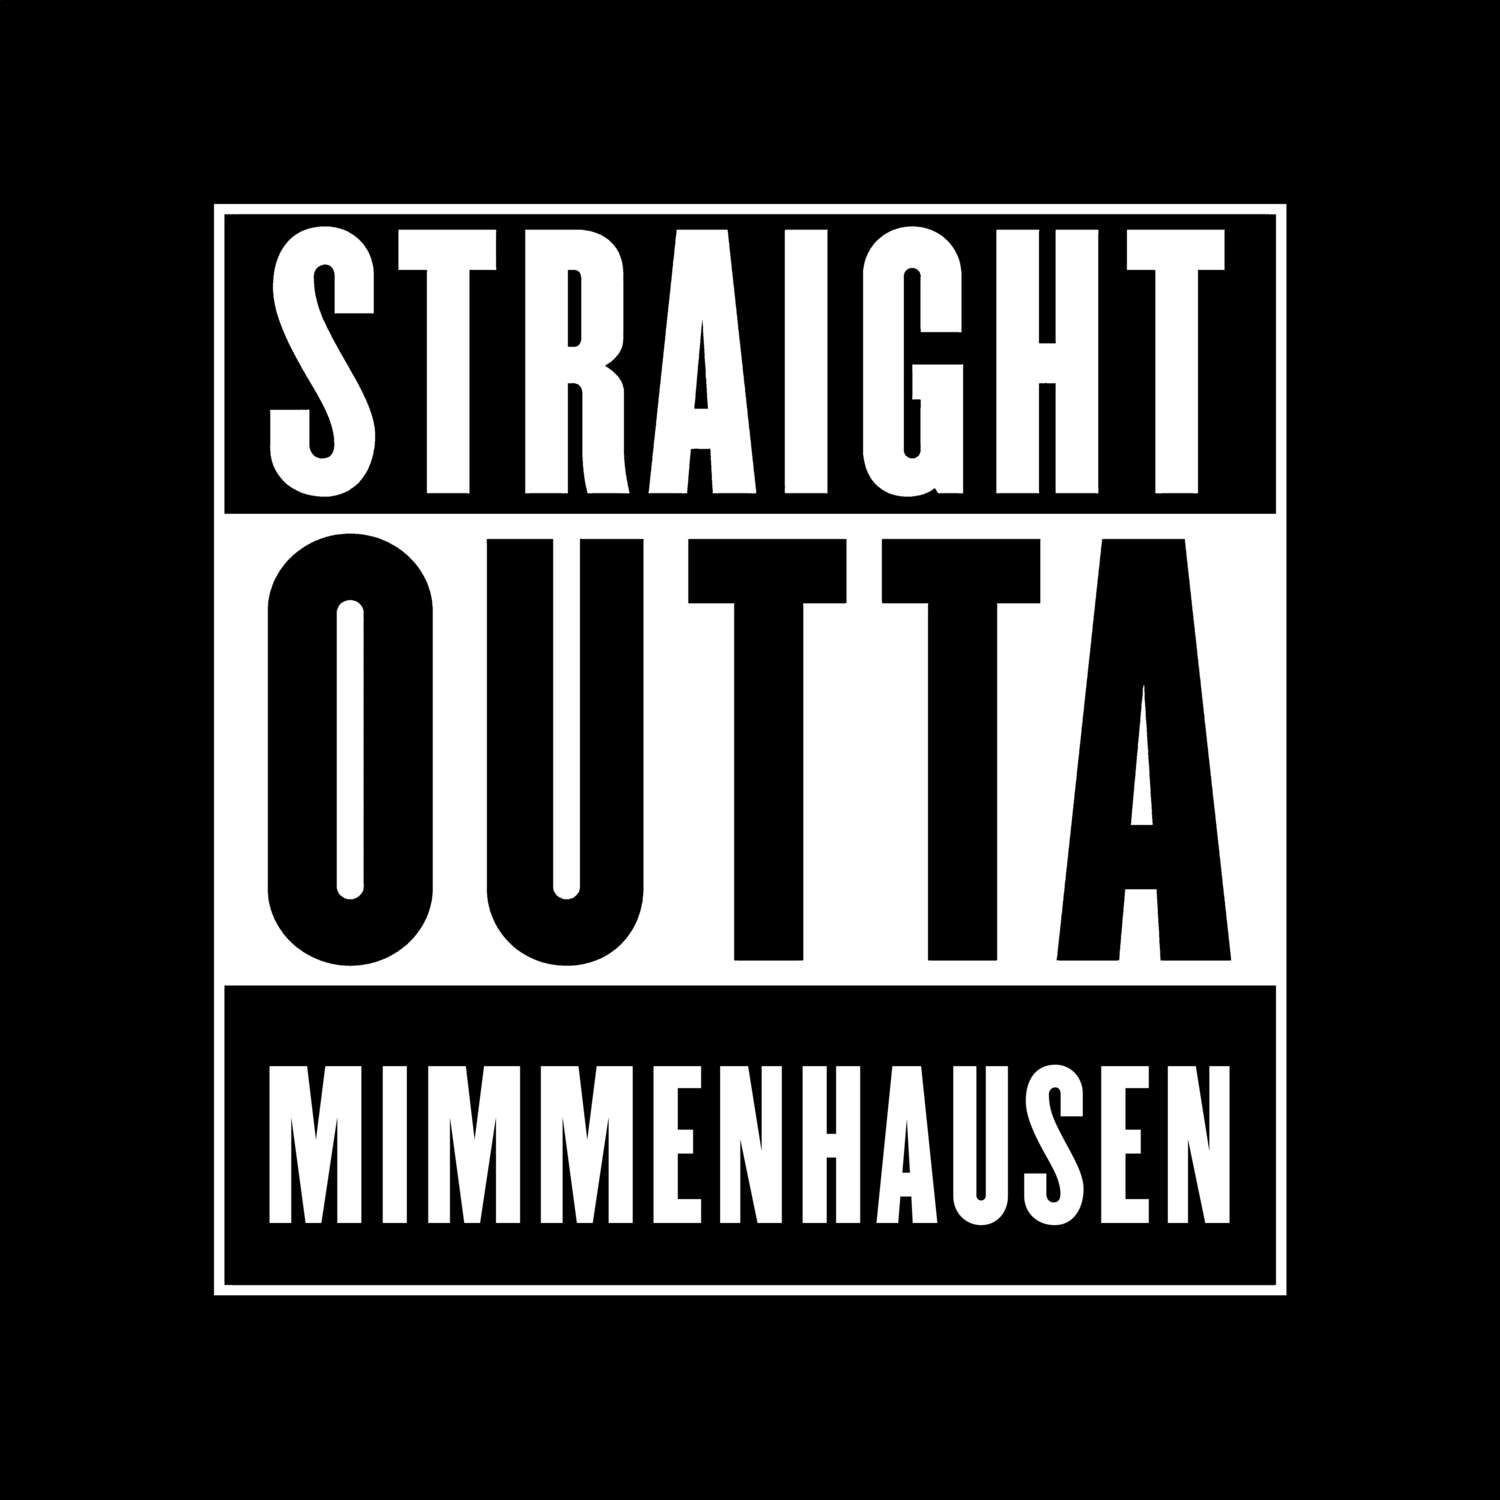 Mimmenhausen T-Shirt »Straight Outta«